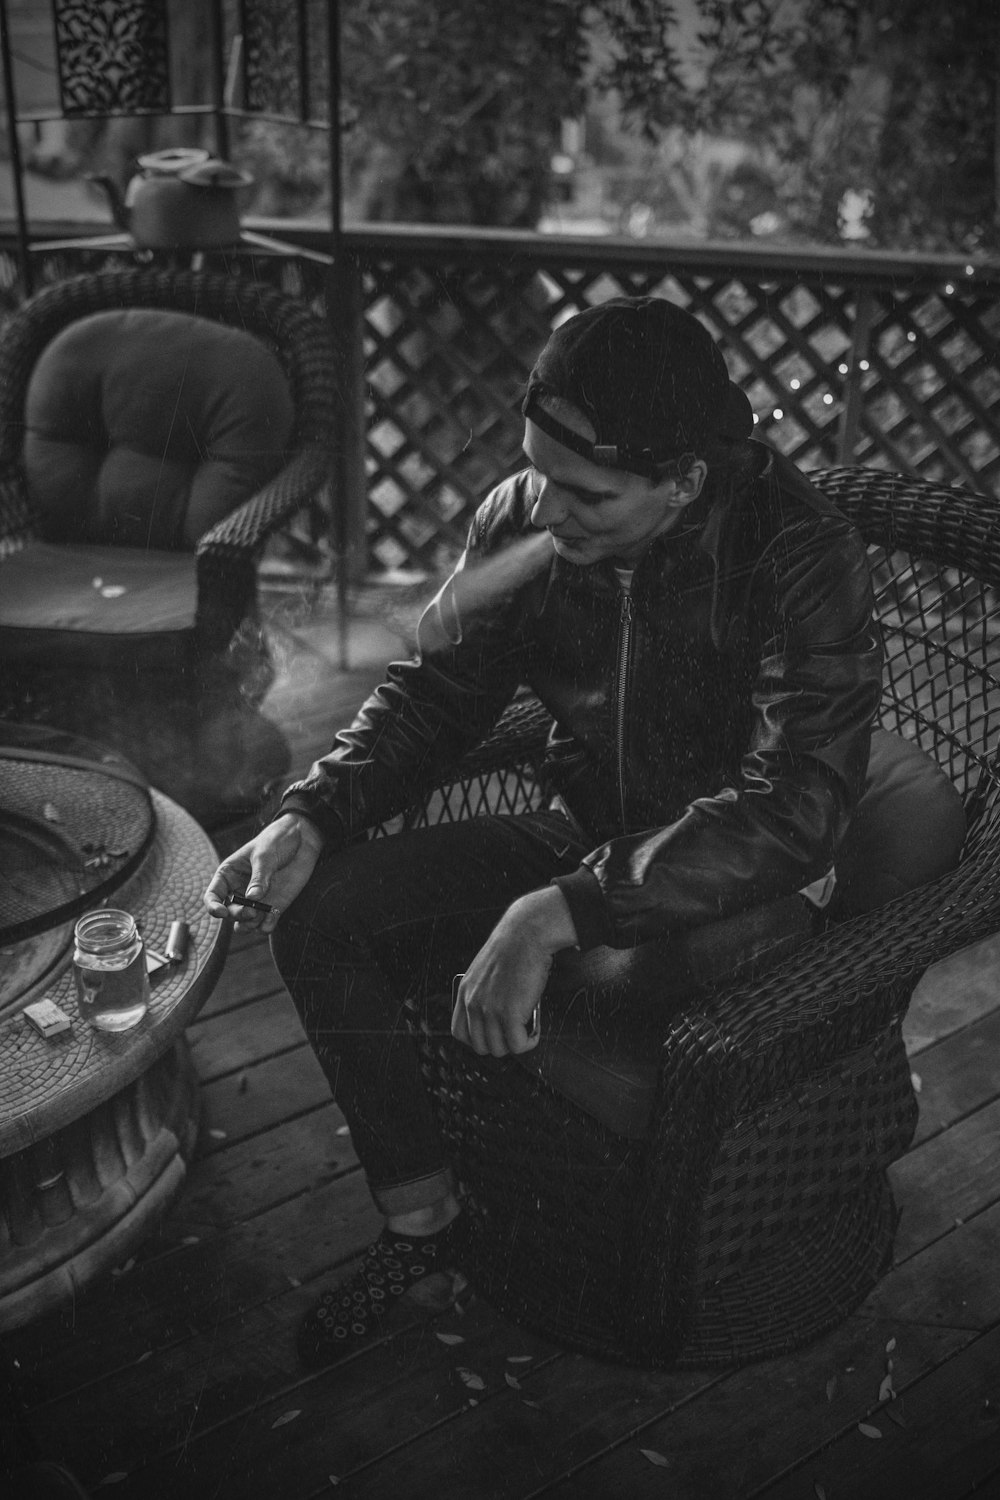 Fotografía en escala de grises de un hombre sentado en la silla fumando